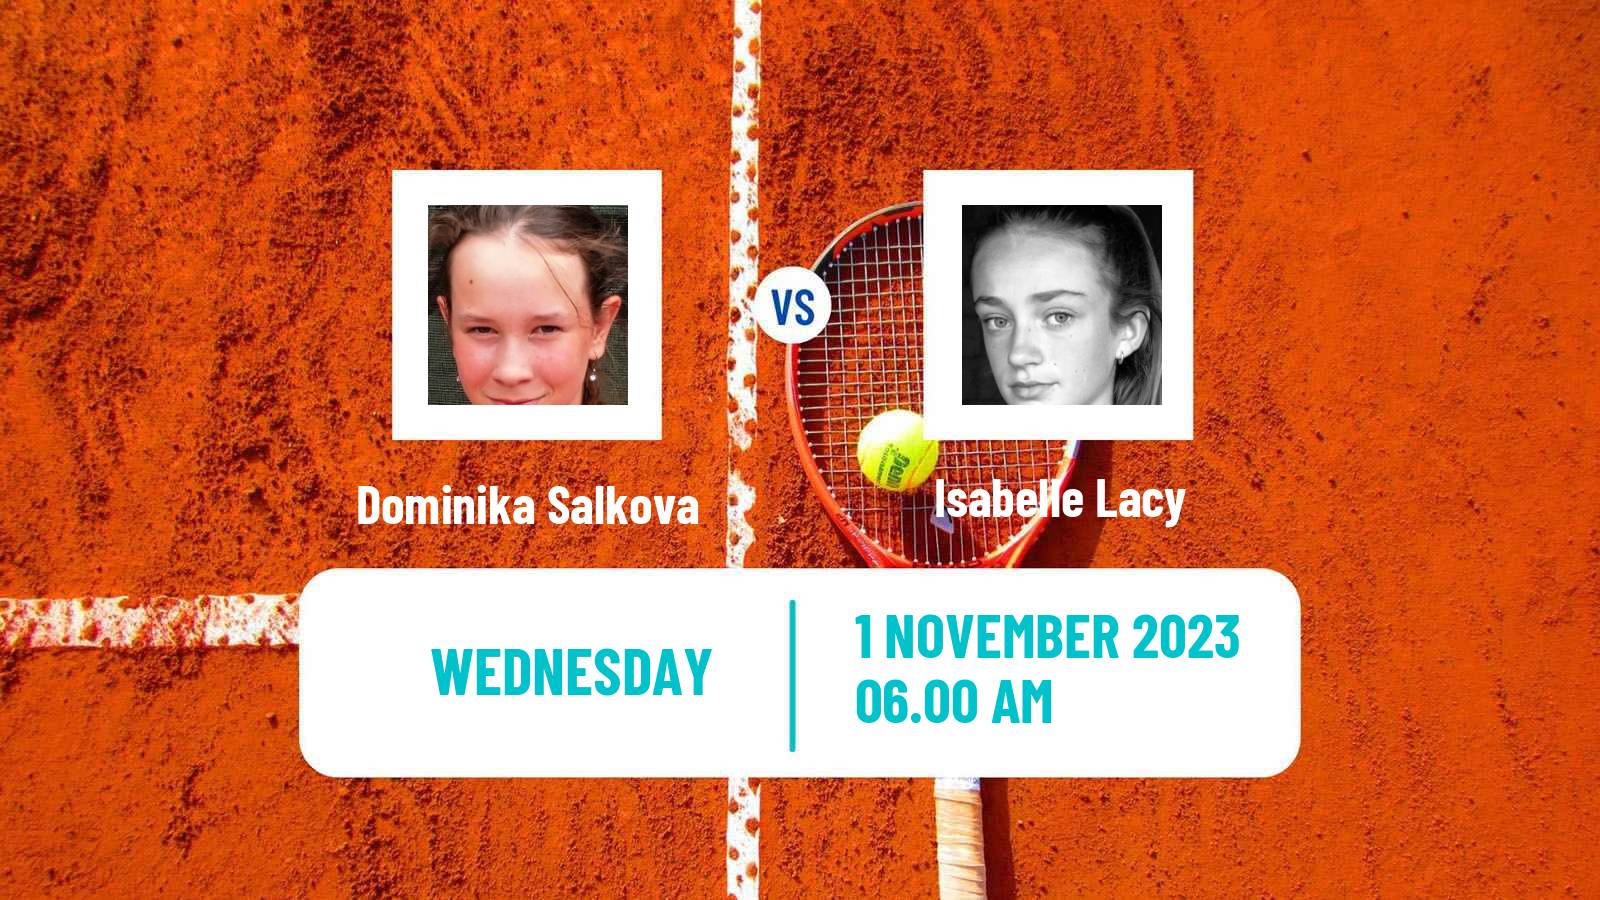 Tennis ITF W25 Sunderland Women Dominika Salkova - Isabelle Lacy